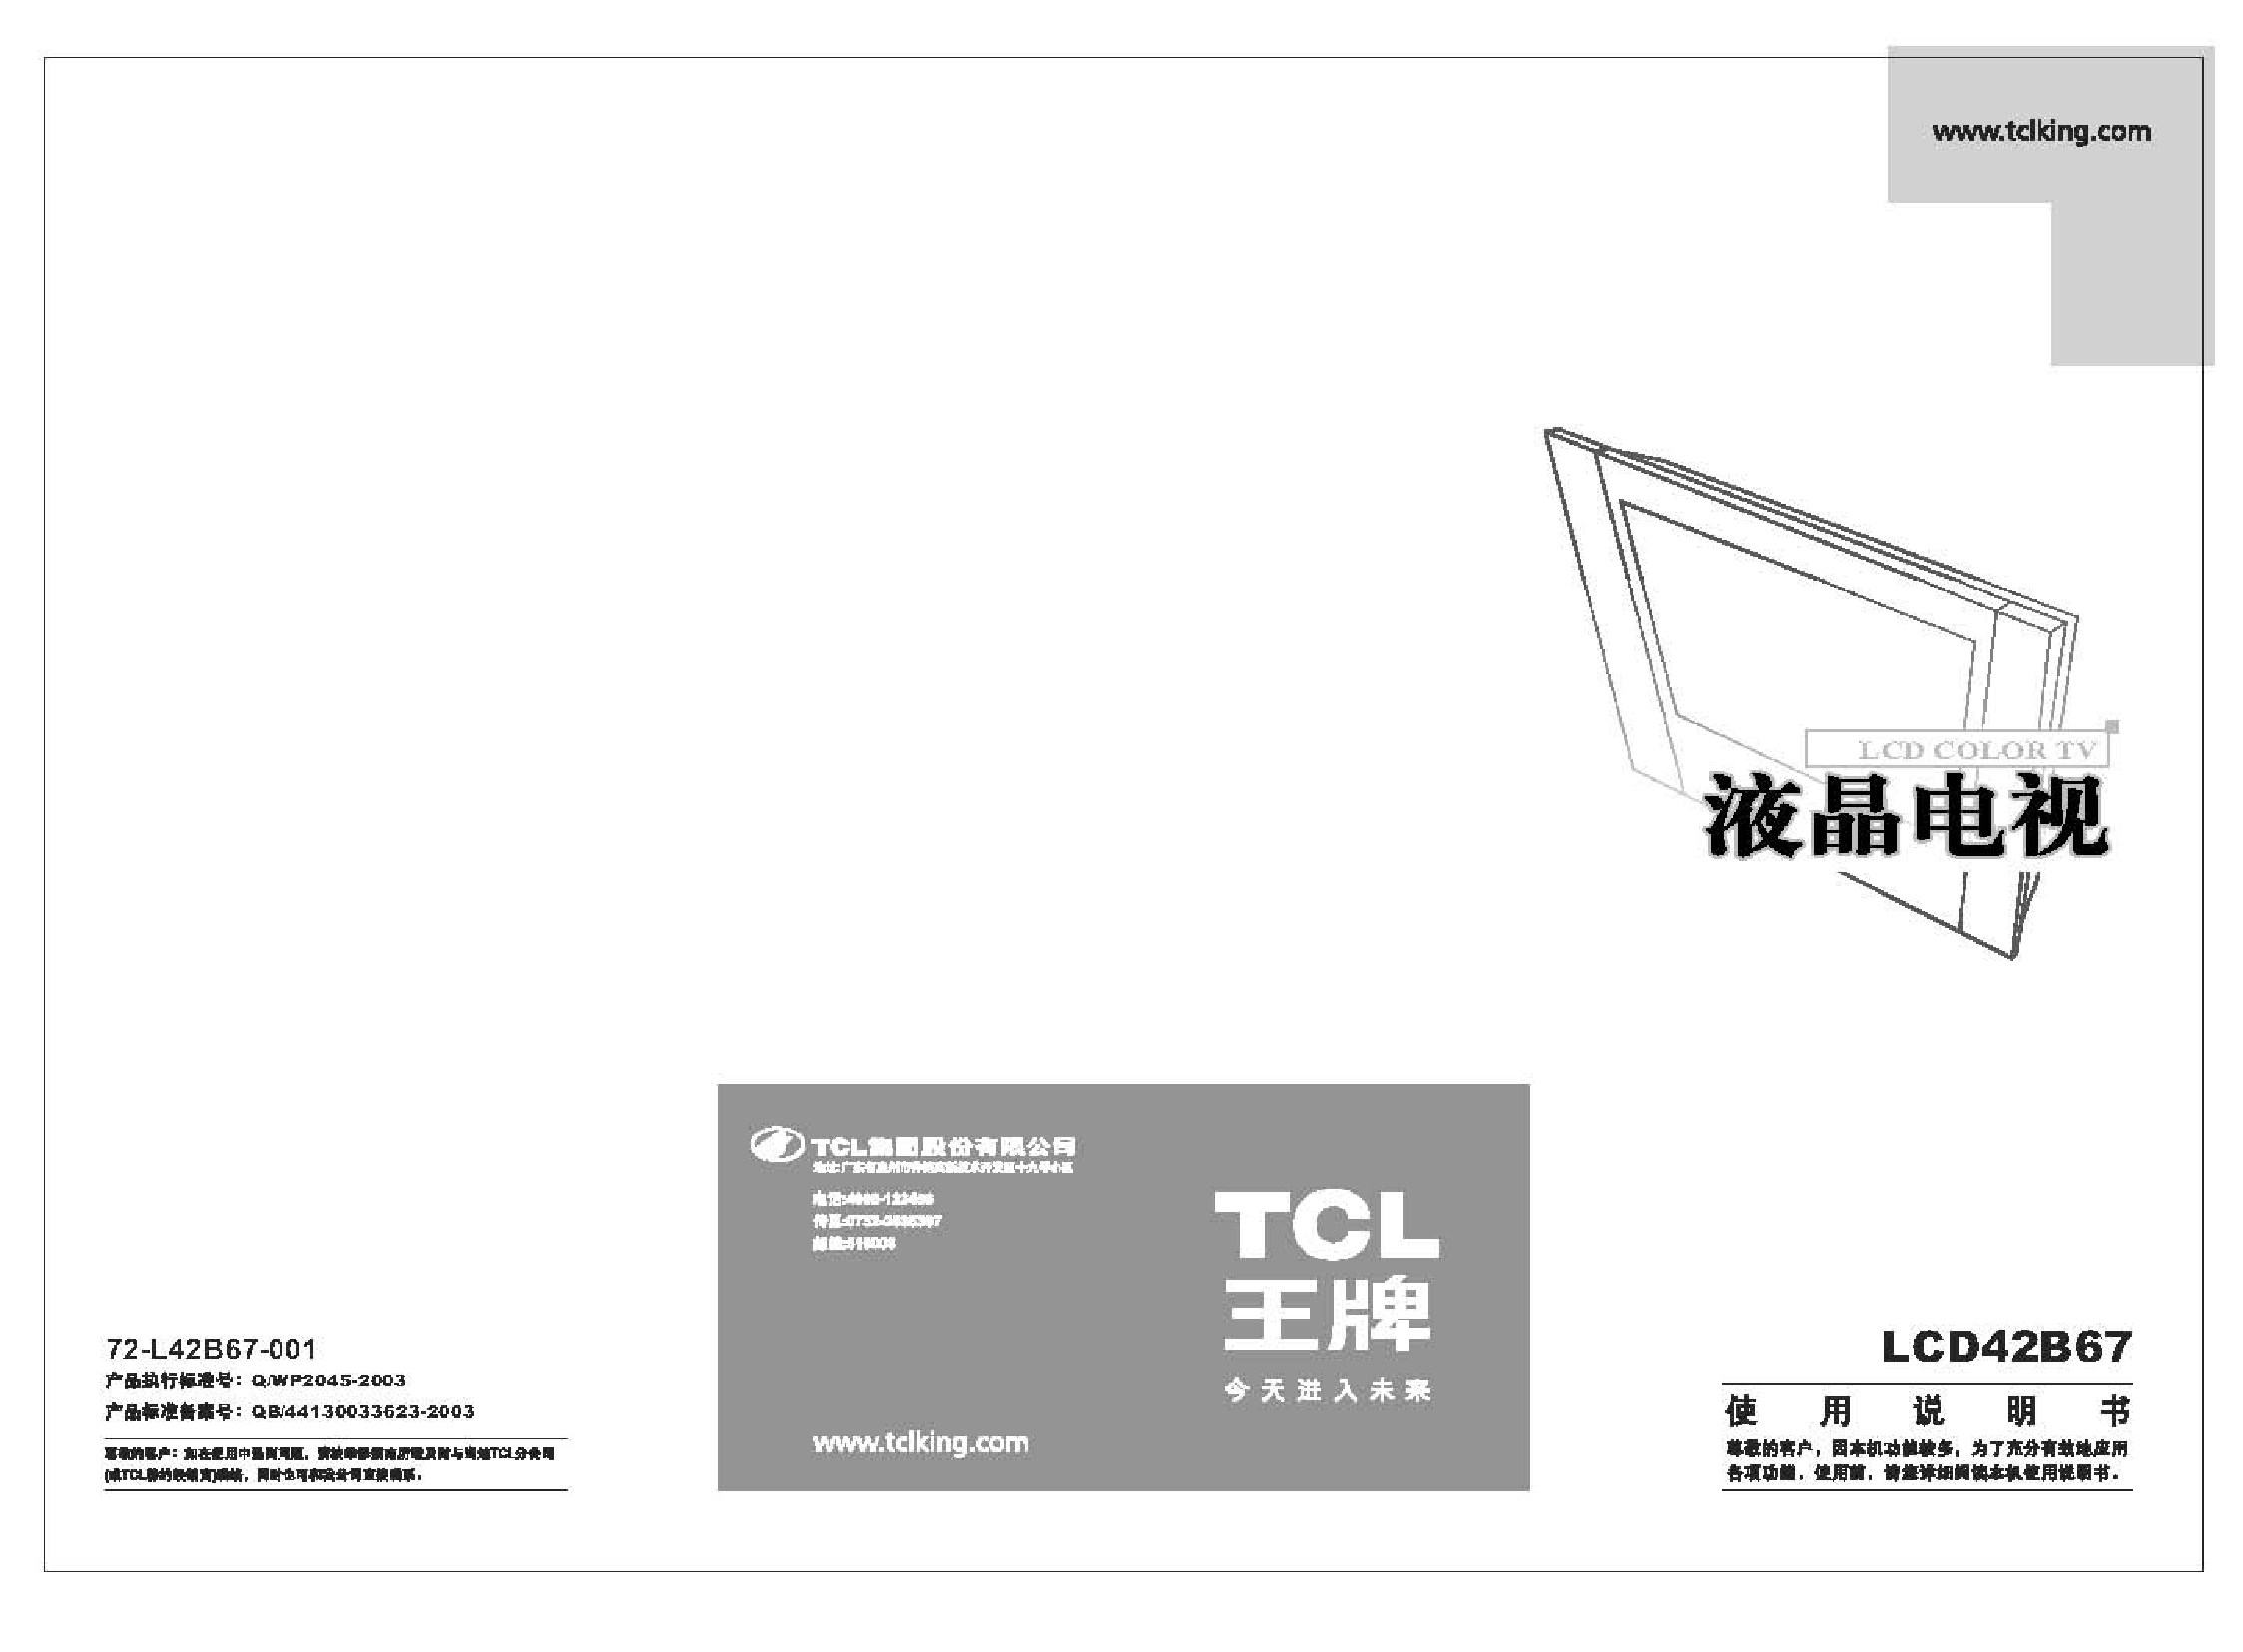 TCL LCD42B67 使用说明书 封面